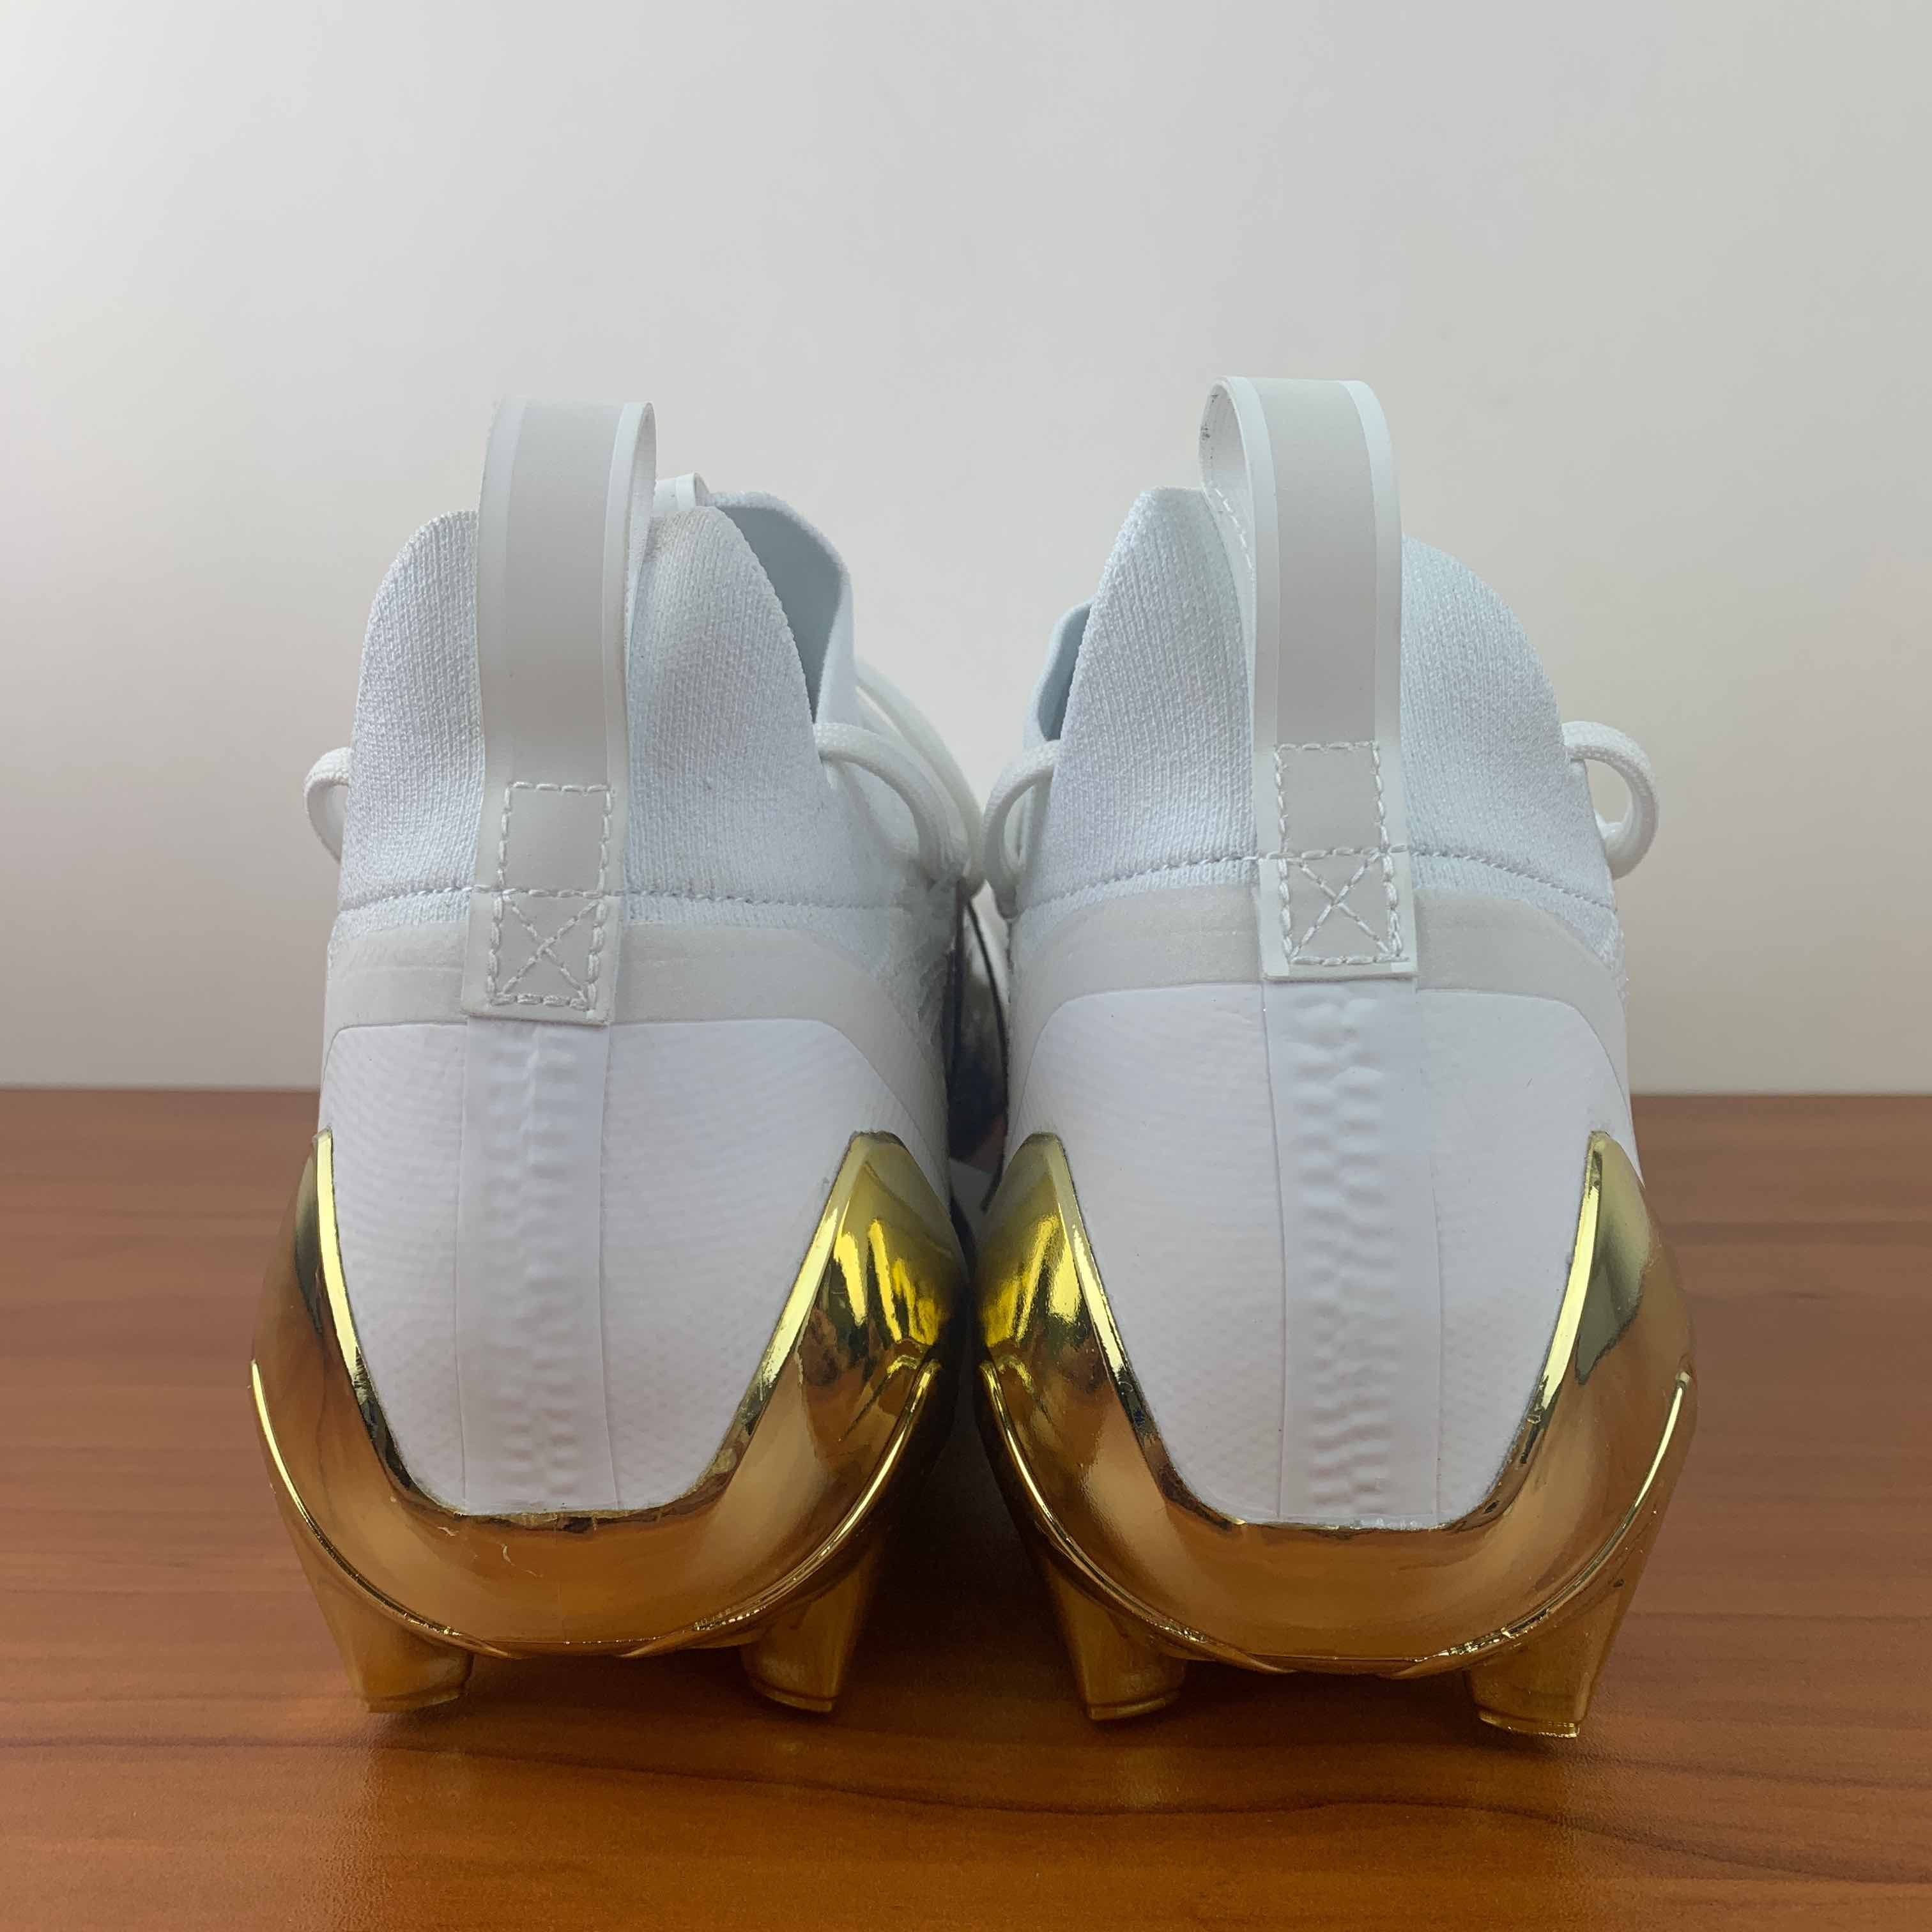 Adidas Adizero Cleats Primeknit White Gold Metallic Size US 12 / EU 45 - 5 Thumbnail